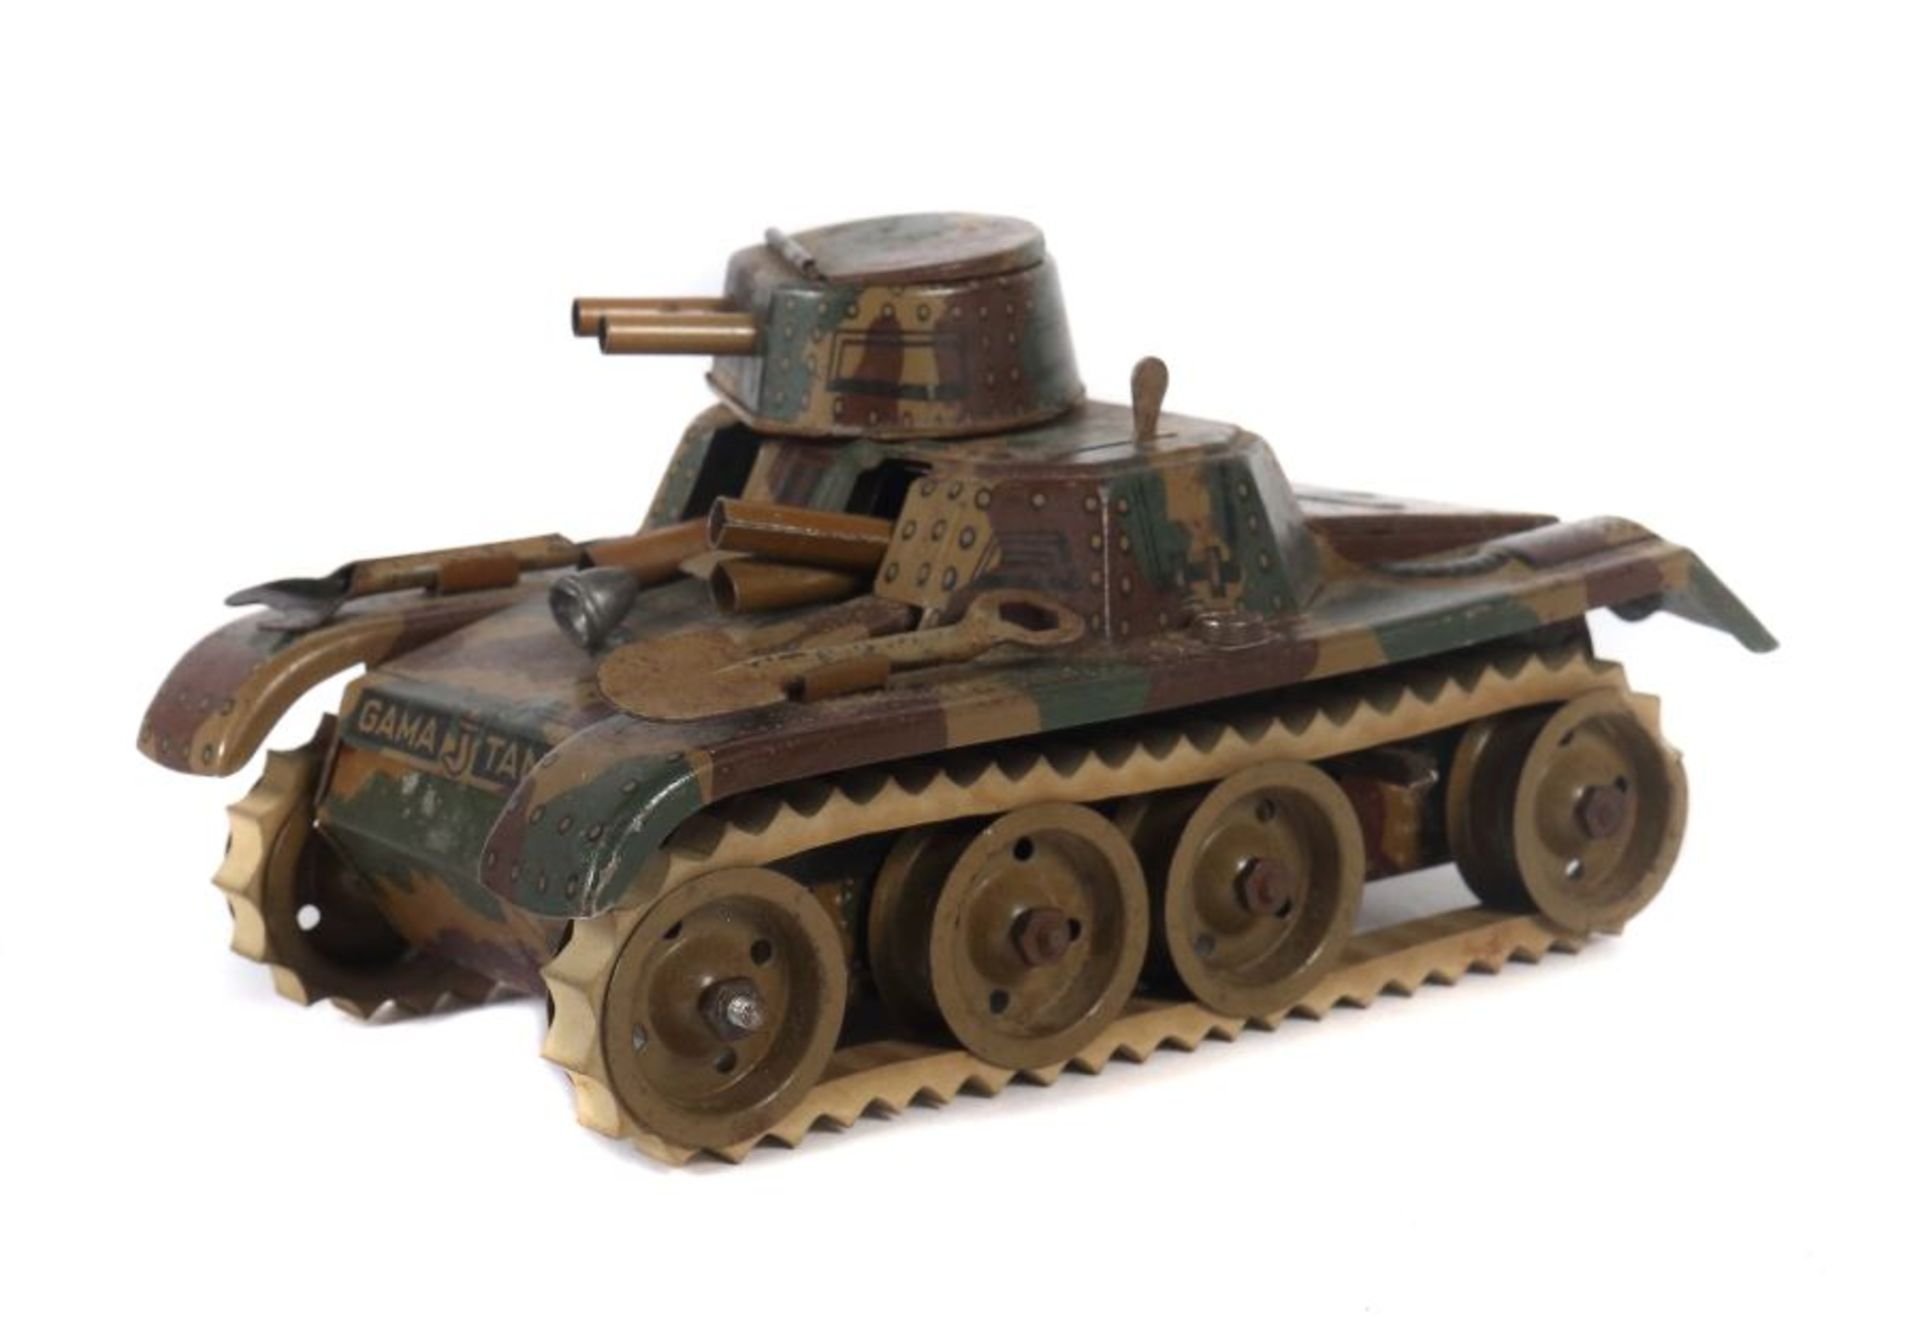 PanzerGAMA, Montage Tank, Nr. (2)60, ca. 1937-40, Blech, mimikry, weiße Ketten, Uhrwerkantrieb,